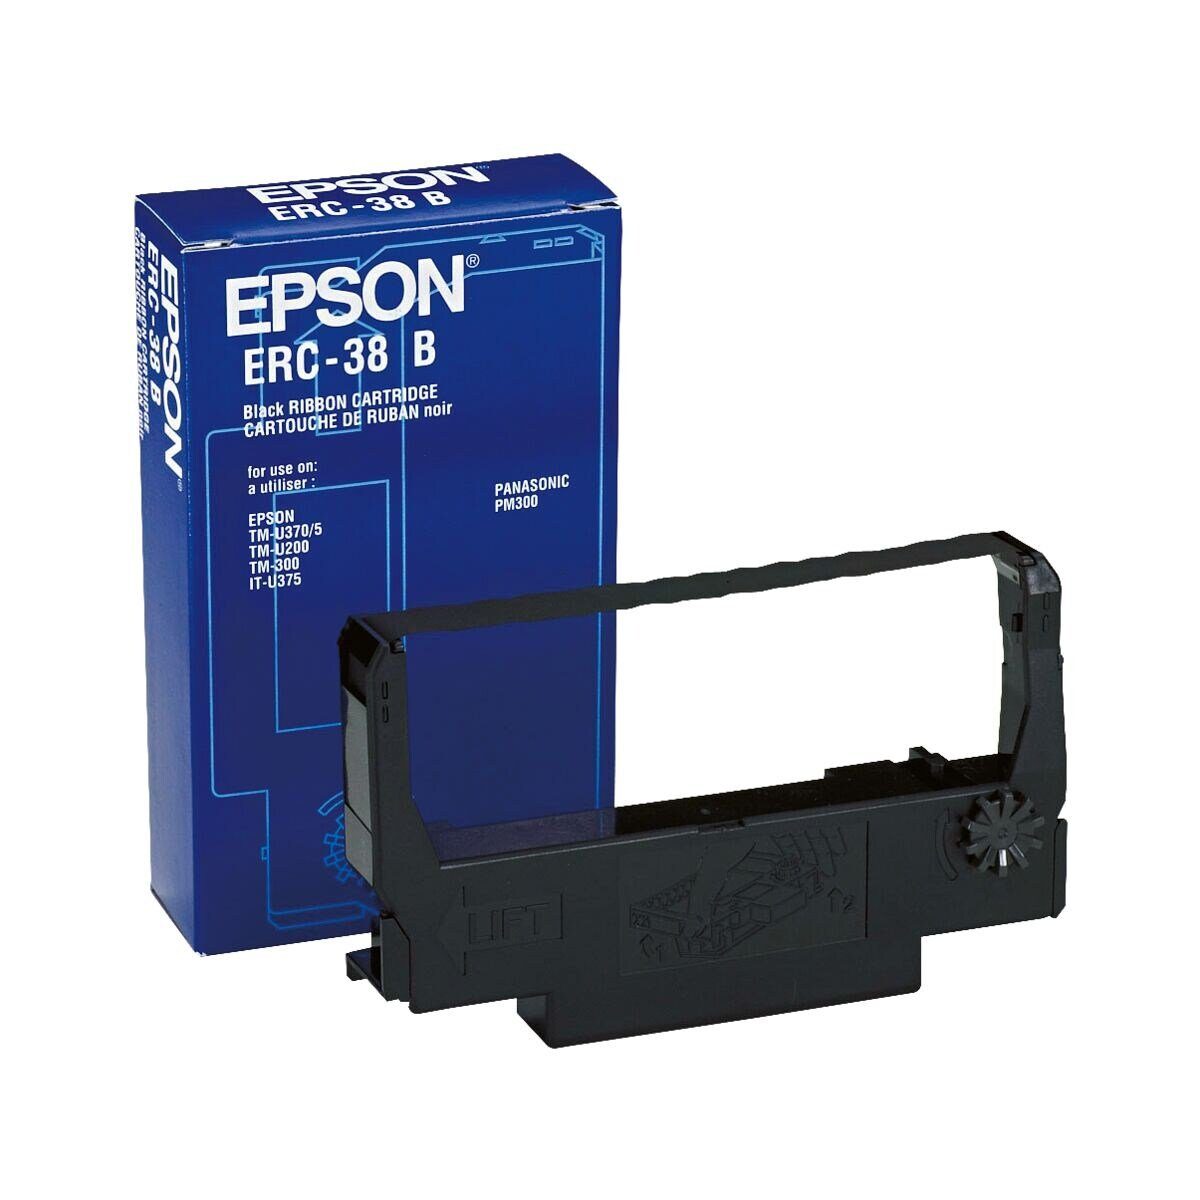 Epson Druckerband ERC-38B, für Kassensysteme, schwarz | Beschriftungsbänder